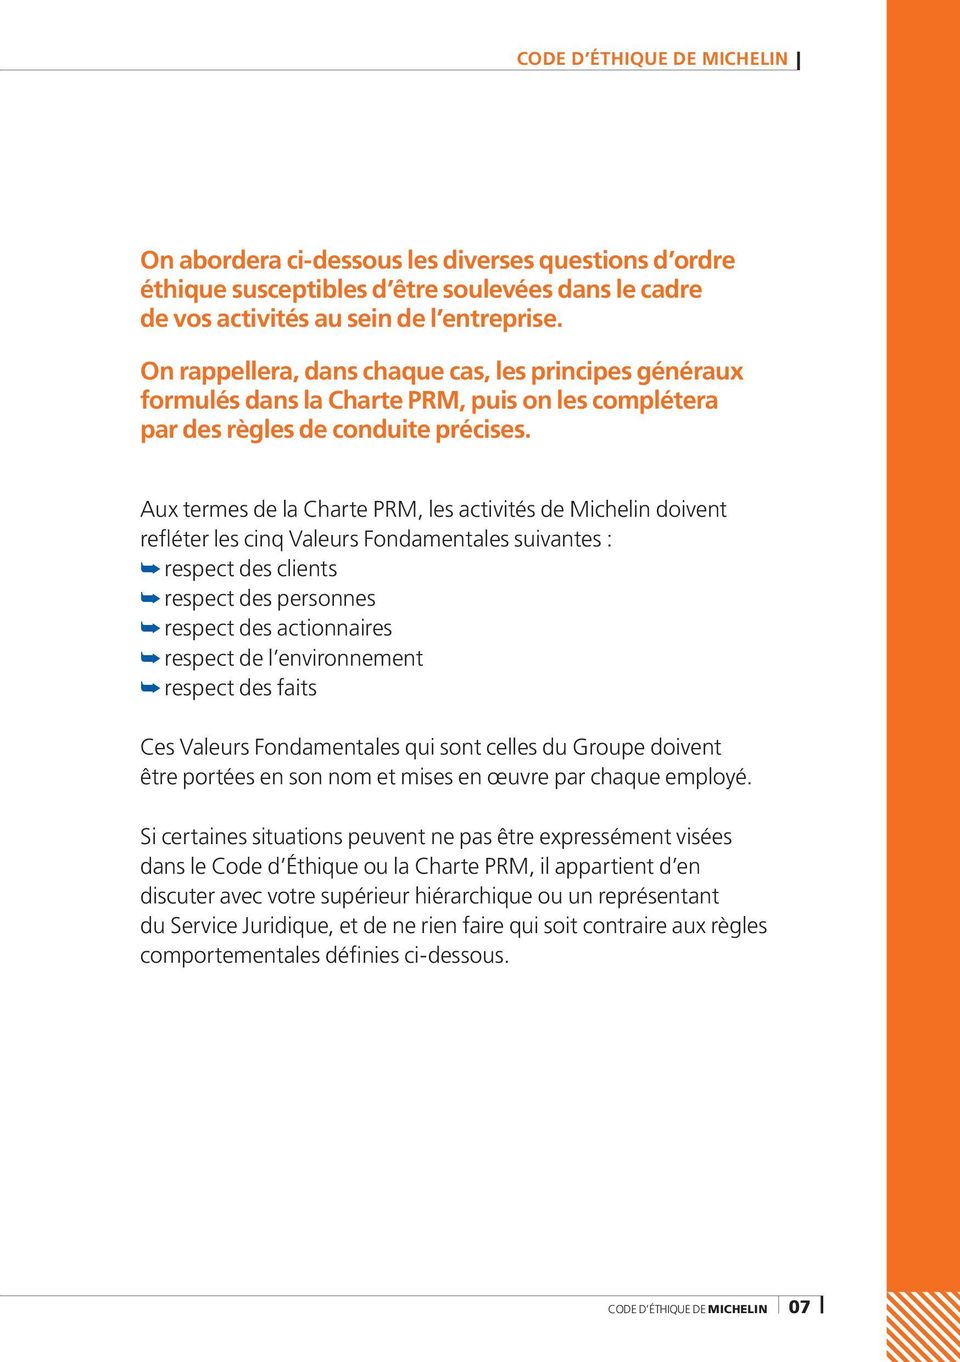 Aux termes de la Charte PRM, les activités de Michelin doivent refléter les cinq Valeurs Fondamentales suivantes : respect des clients respect des personnes respect des actionnaires respect de l